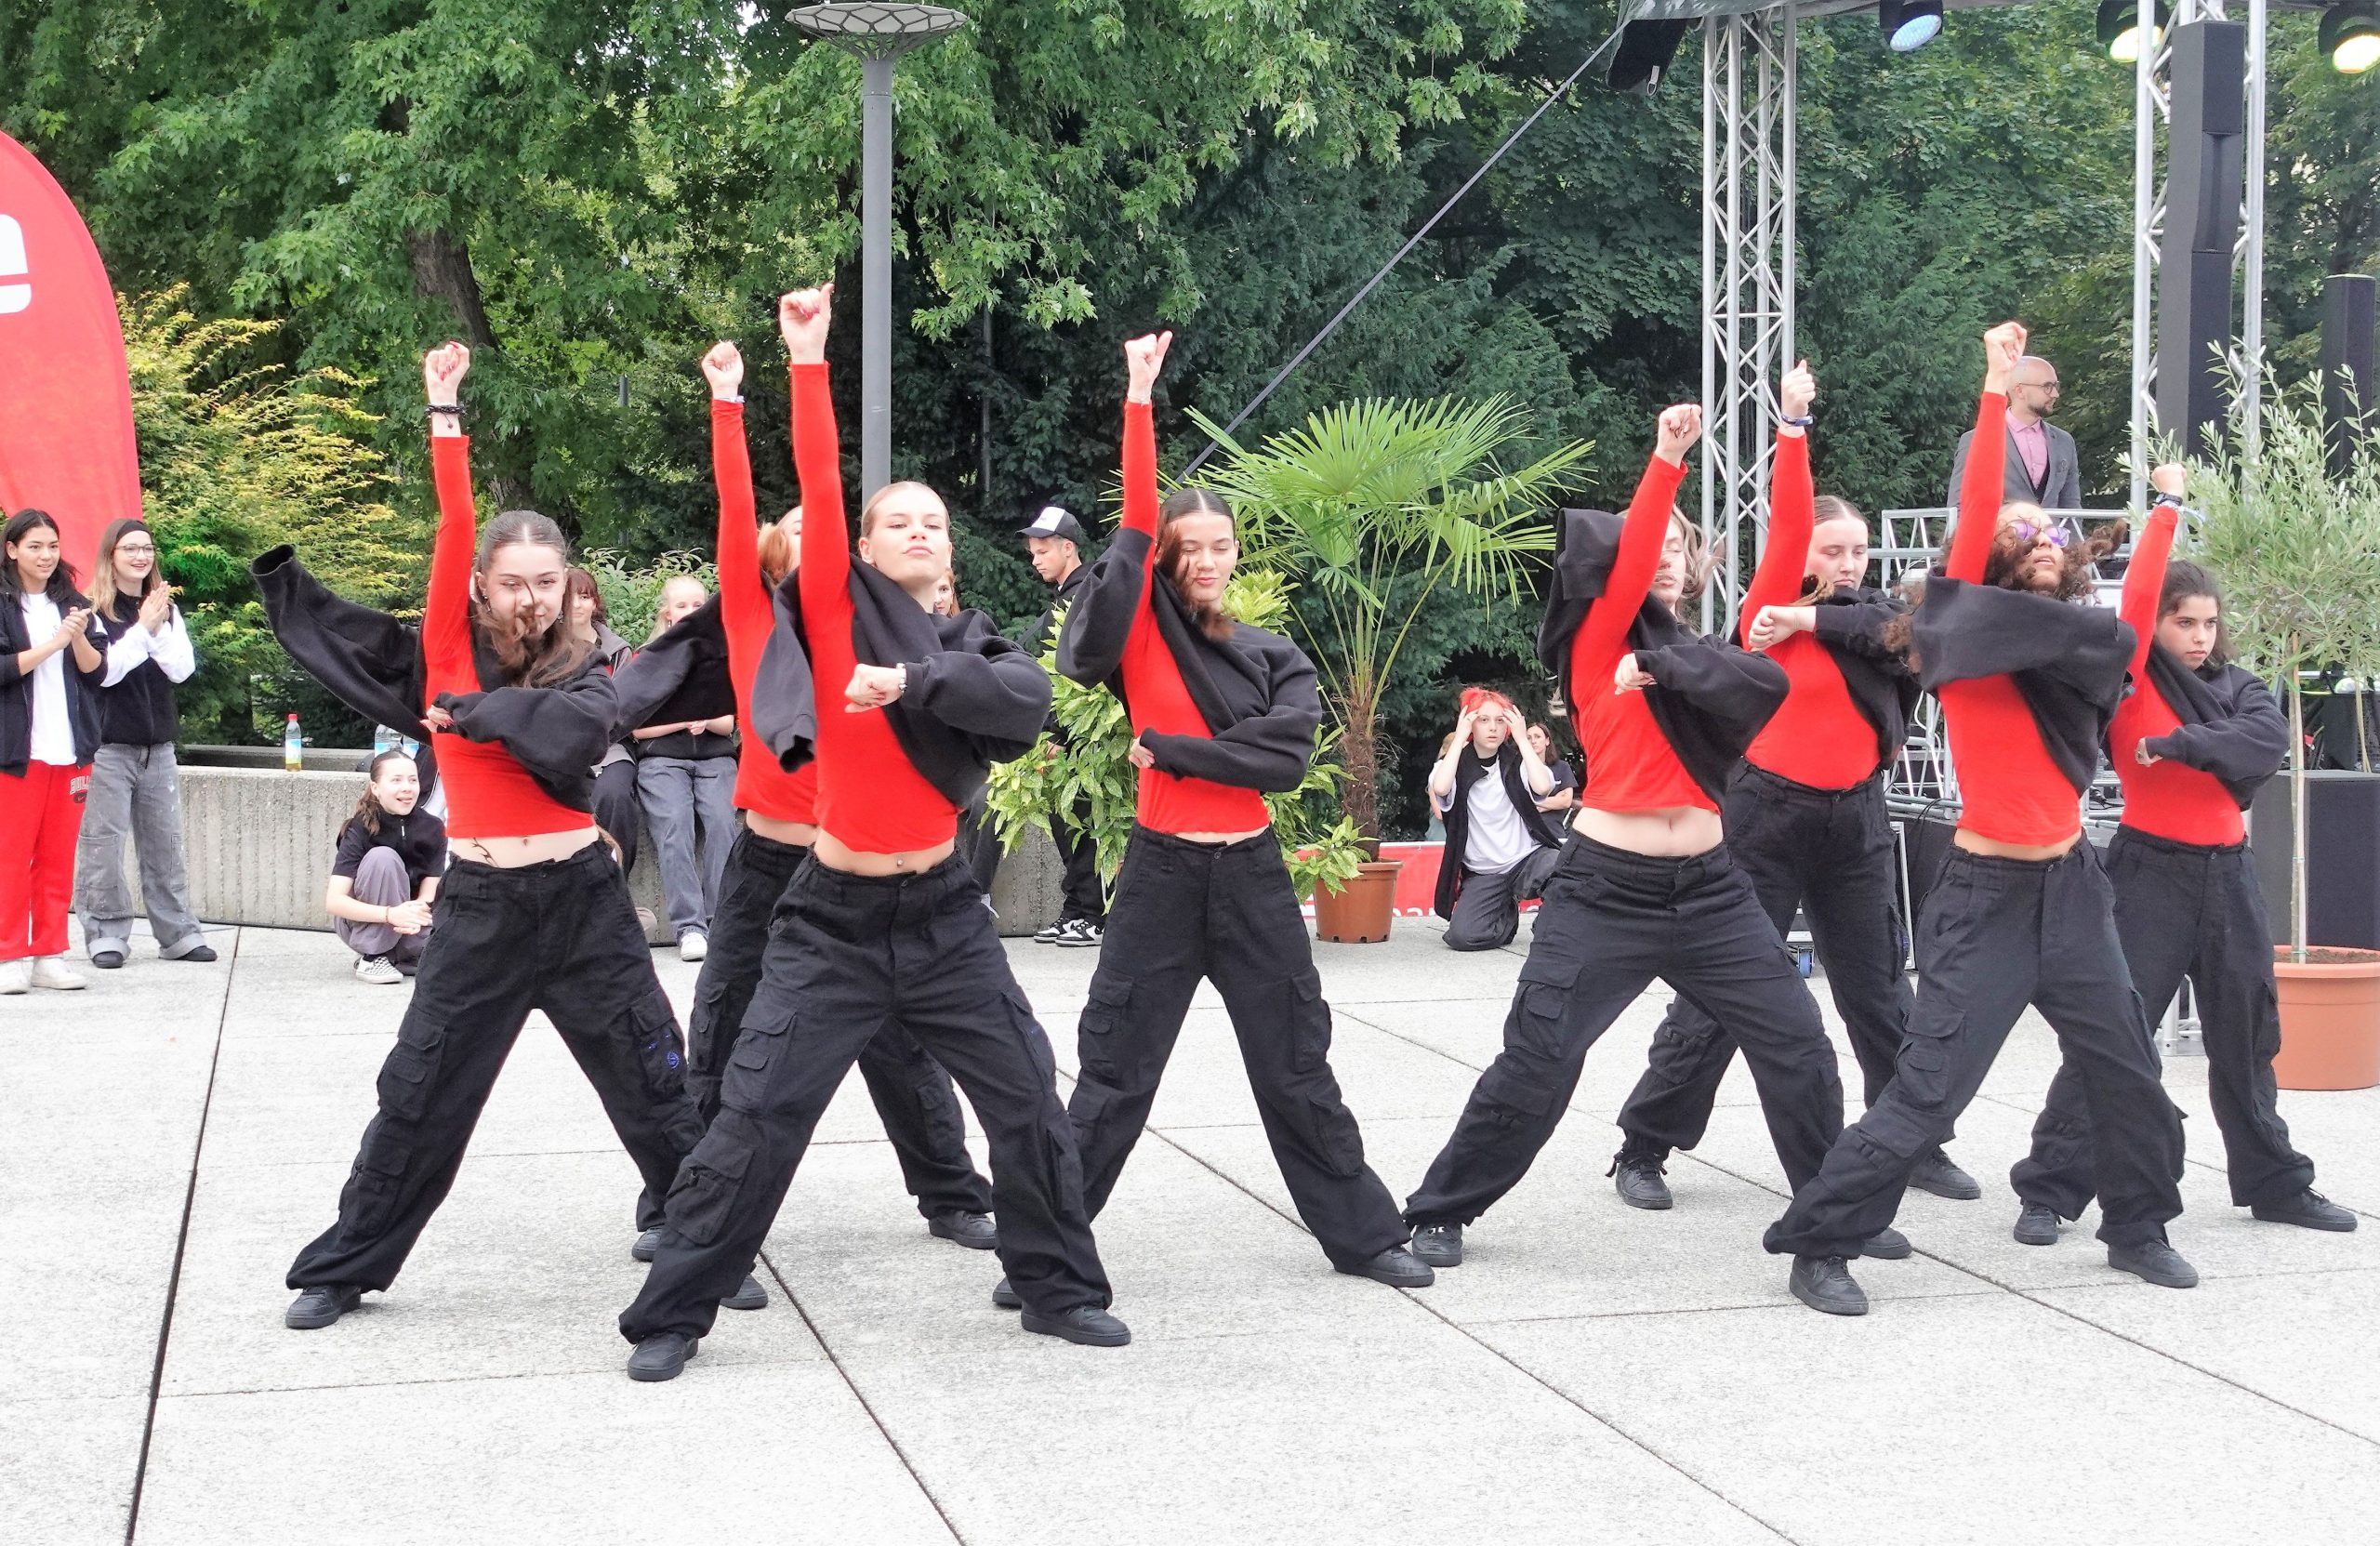 Tanzvorführung beim Sommerempfang Rosenheim. 